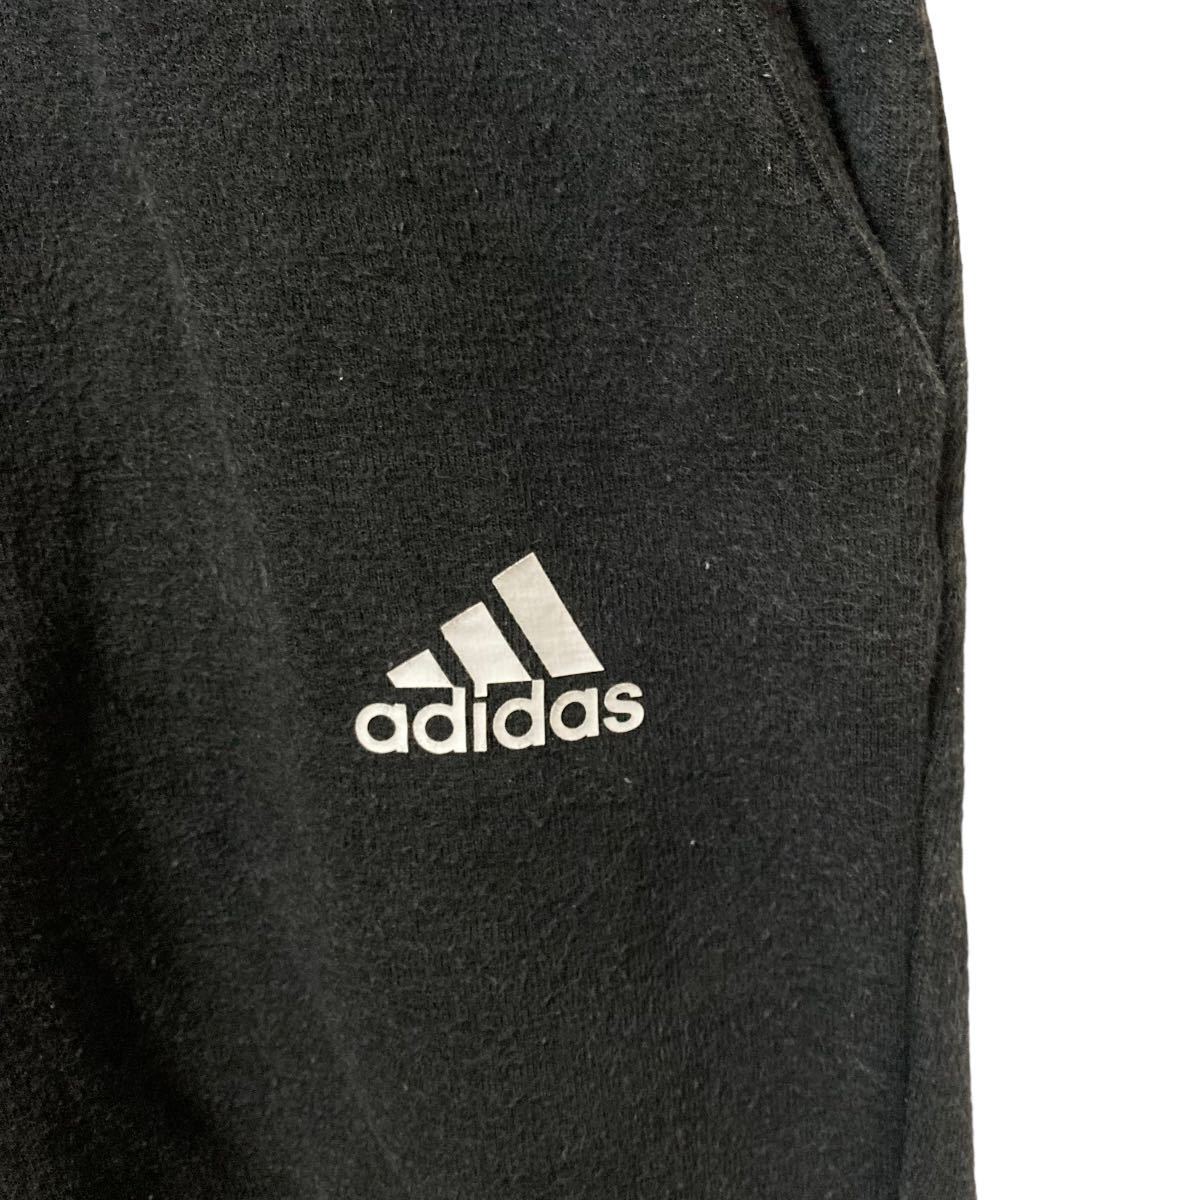 adidas アディダス パフォーマンスロゴ 刺繍 スウェットパンツ ジャージ 黒 サイズ150 中古 古着